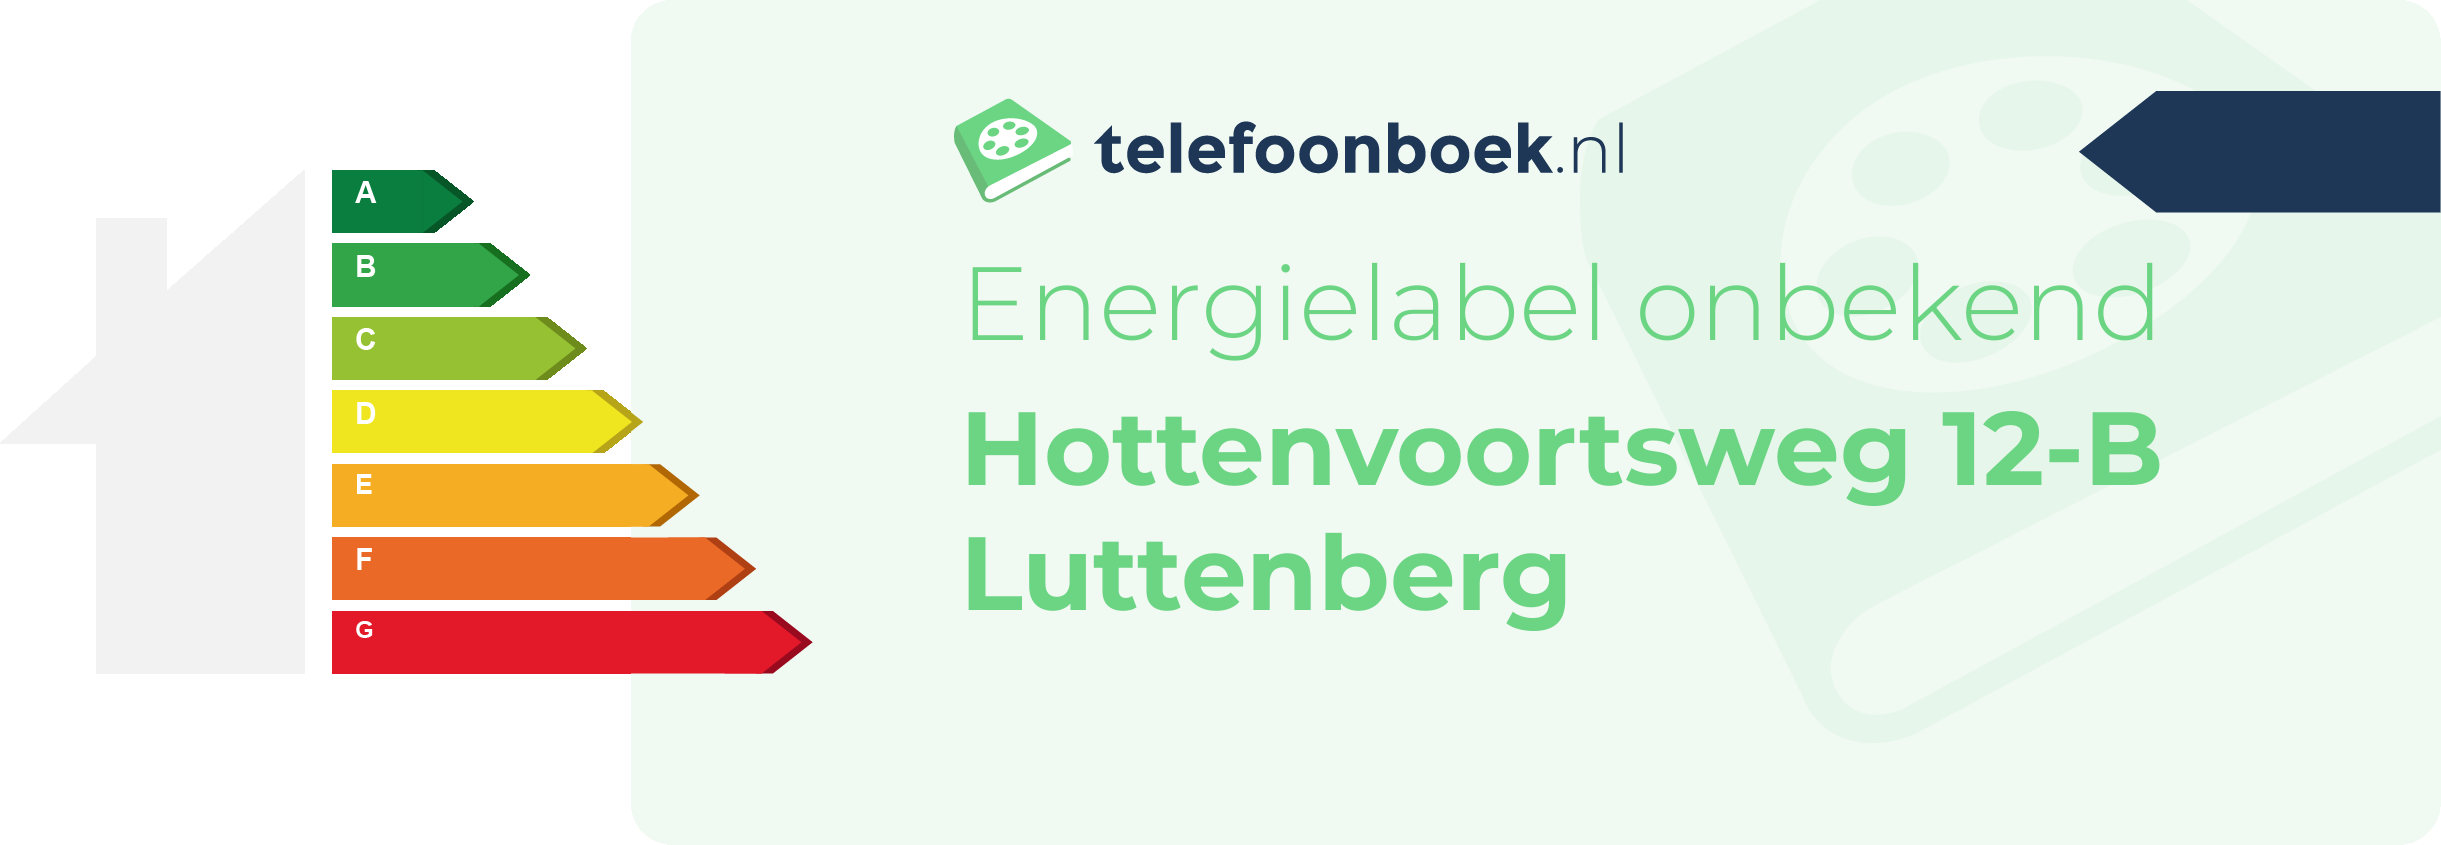 Energielabel Hottenvoortsweg 12-B Luttenberg